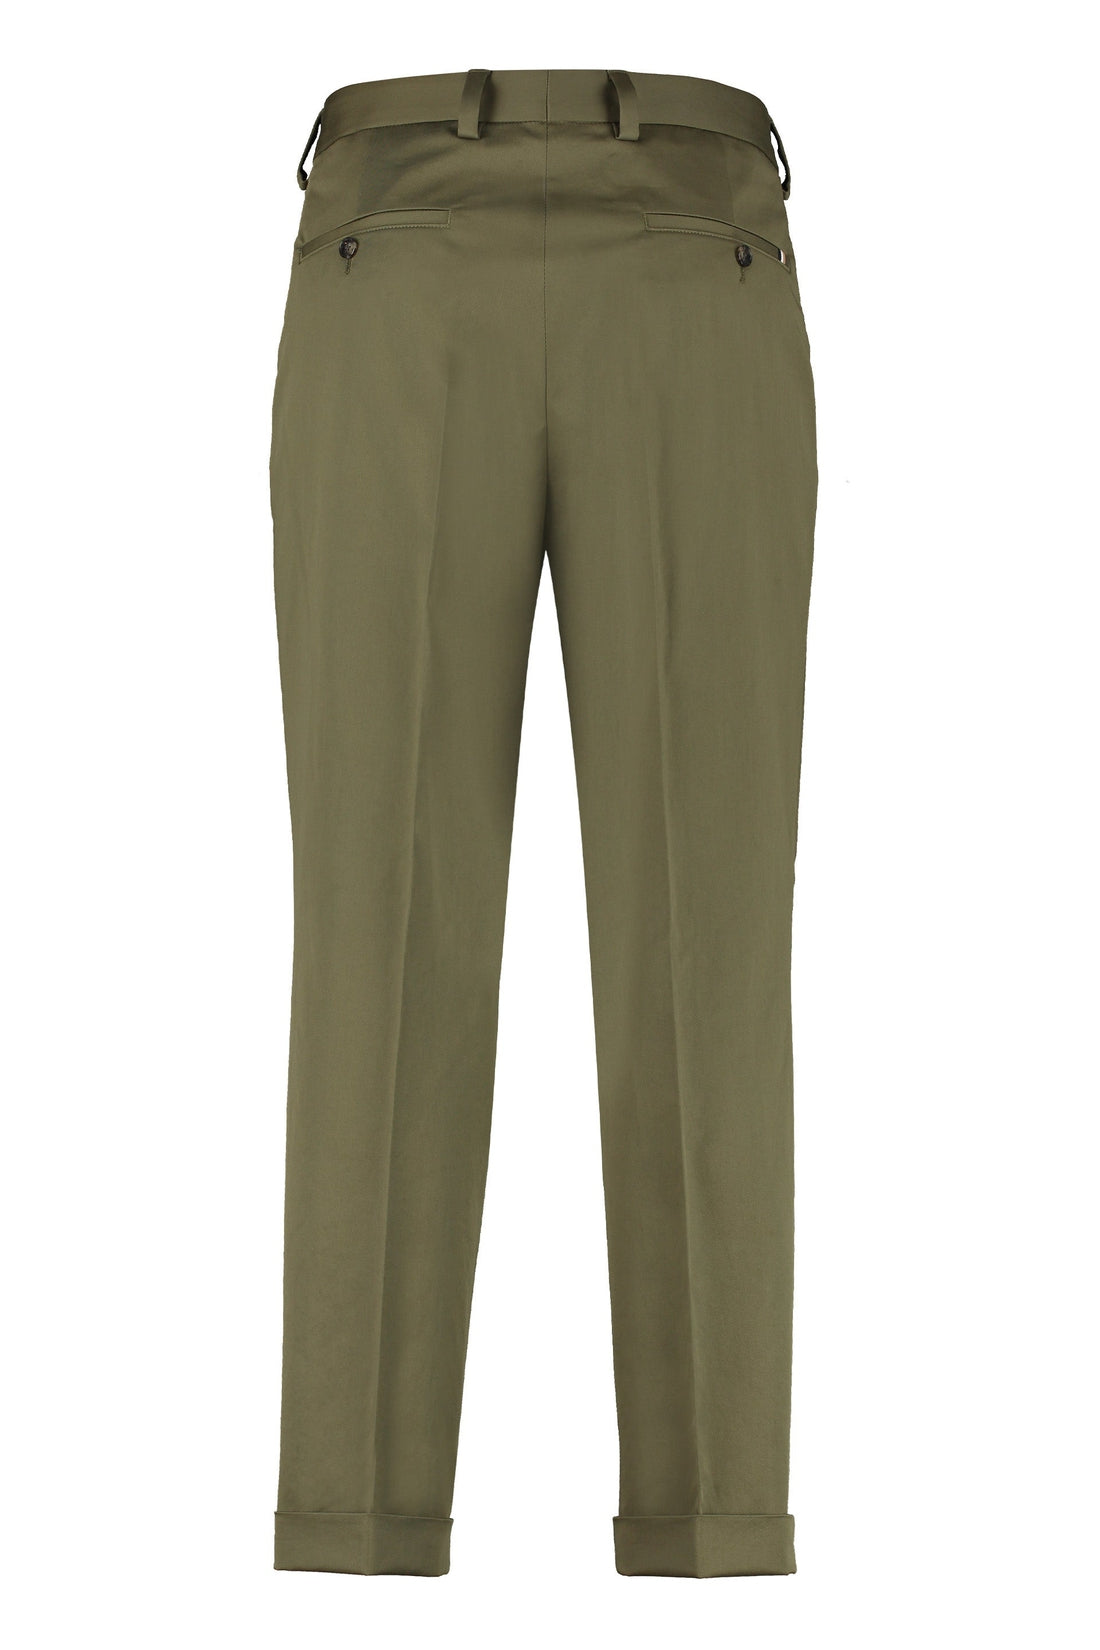 BOSS-OUTLET-SALE-Stretch cotton trousers-ARCHIVIST